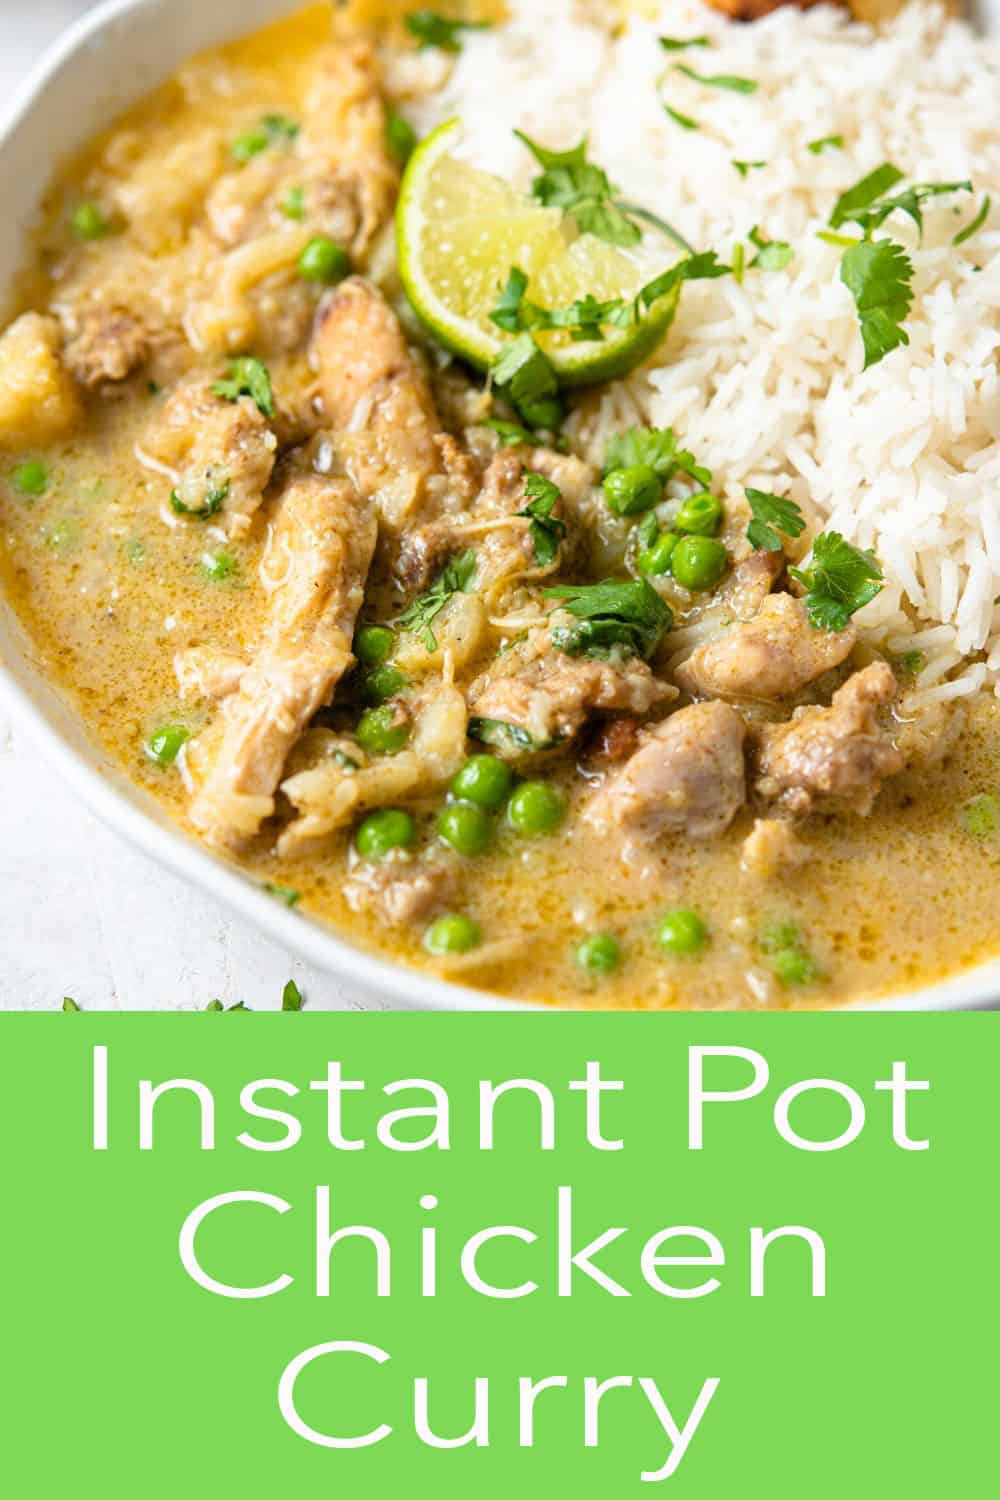 Instant Pot Chicken Curry - Preppy Kitchen